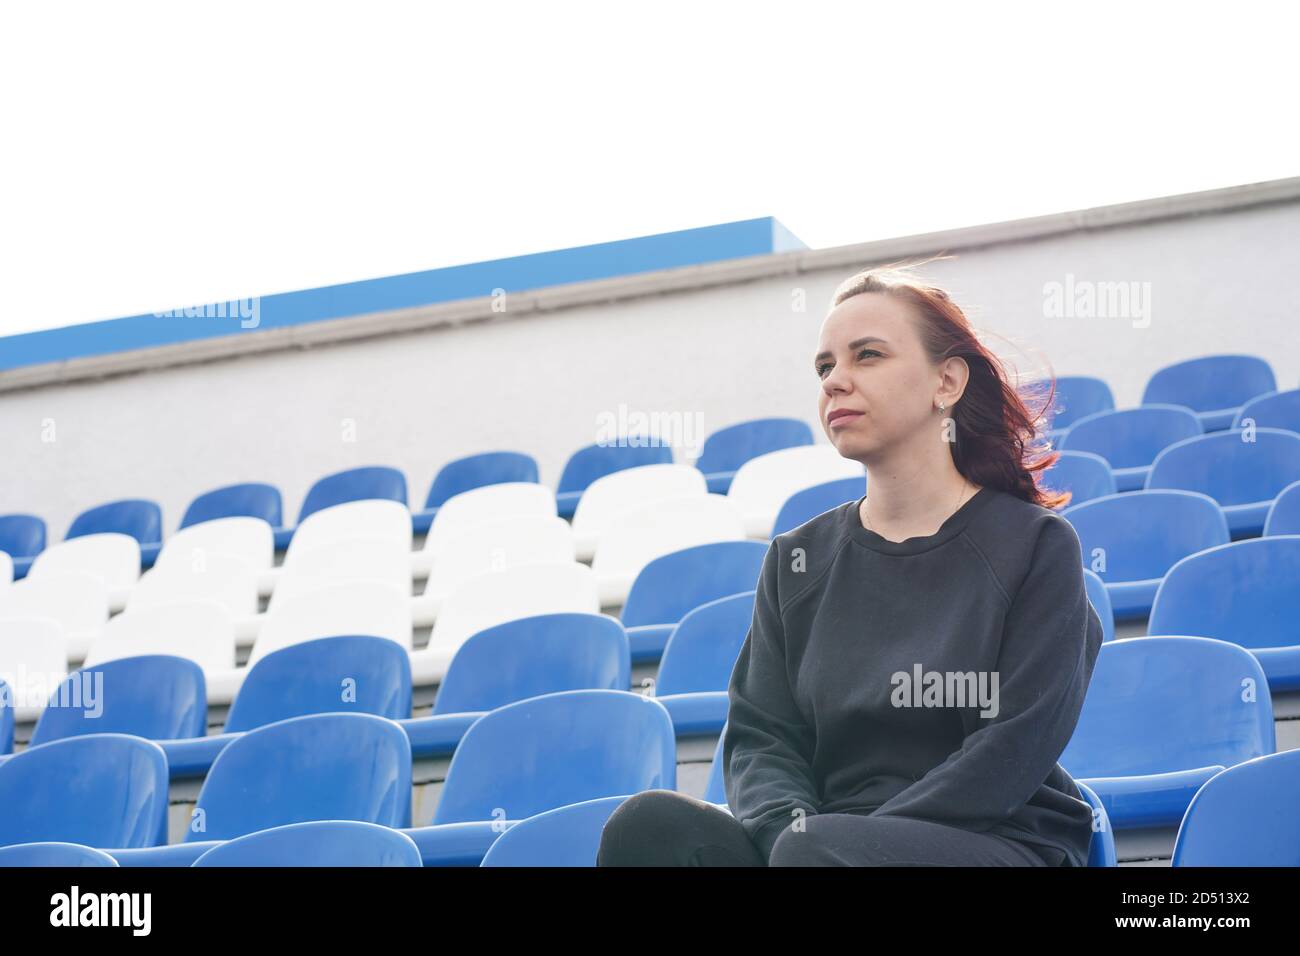 Une jeune femme dans un survêtement noir avec de longs cheveux se trouve sur le stade seul et regarde un sport jeu Banque D'Images